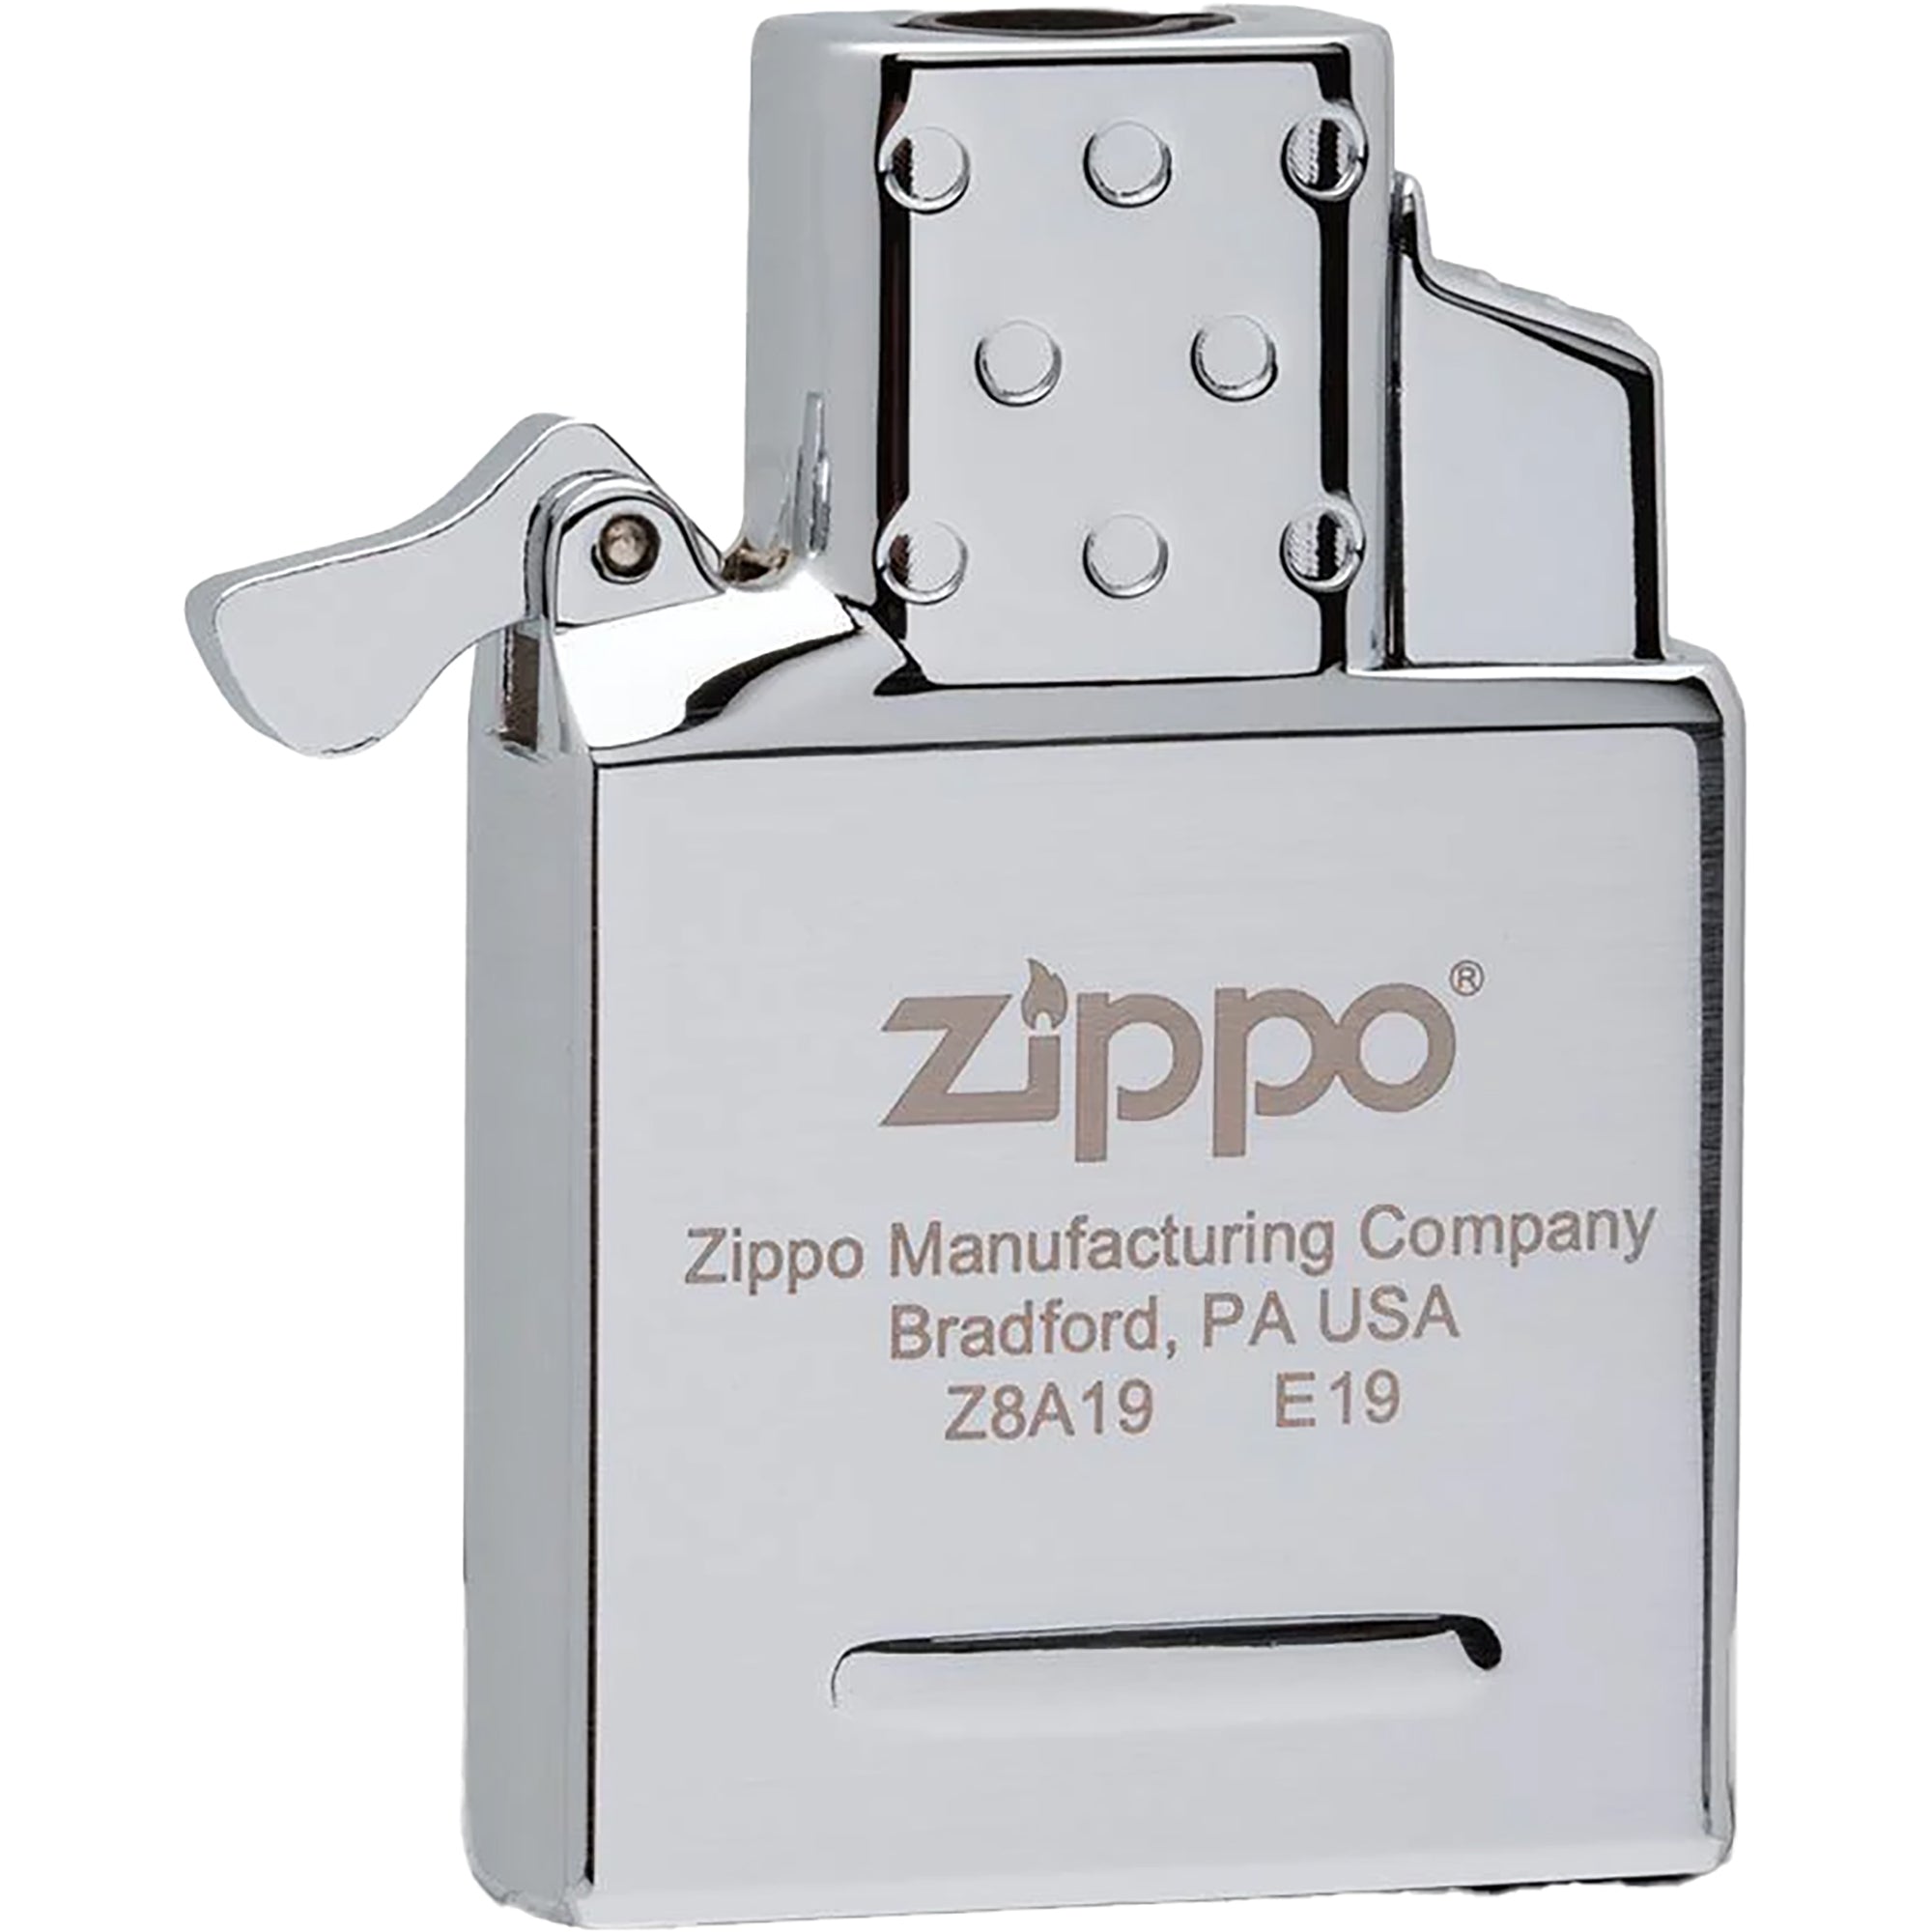 Zippo Single Torch Butane Lighter Insert - Stainless Steel Zippo